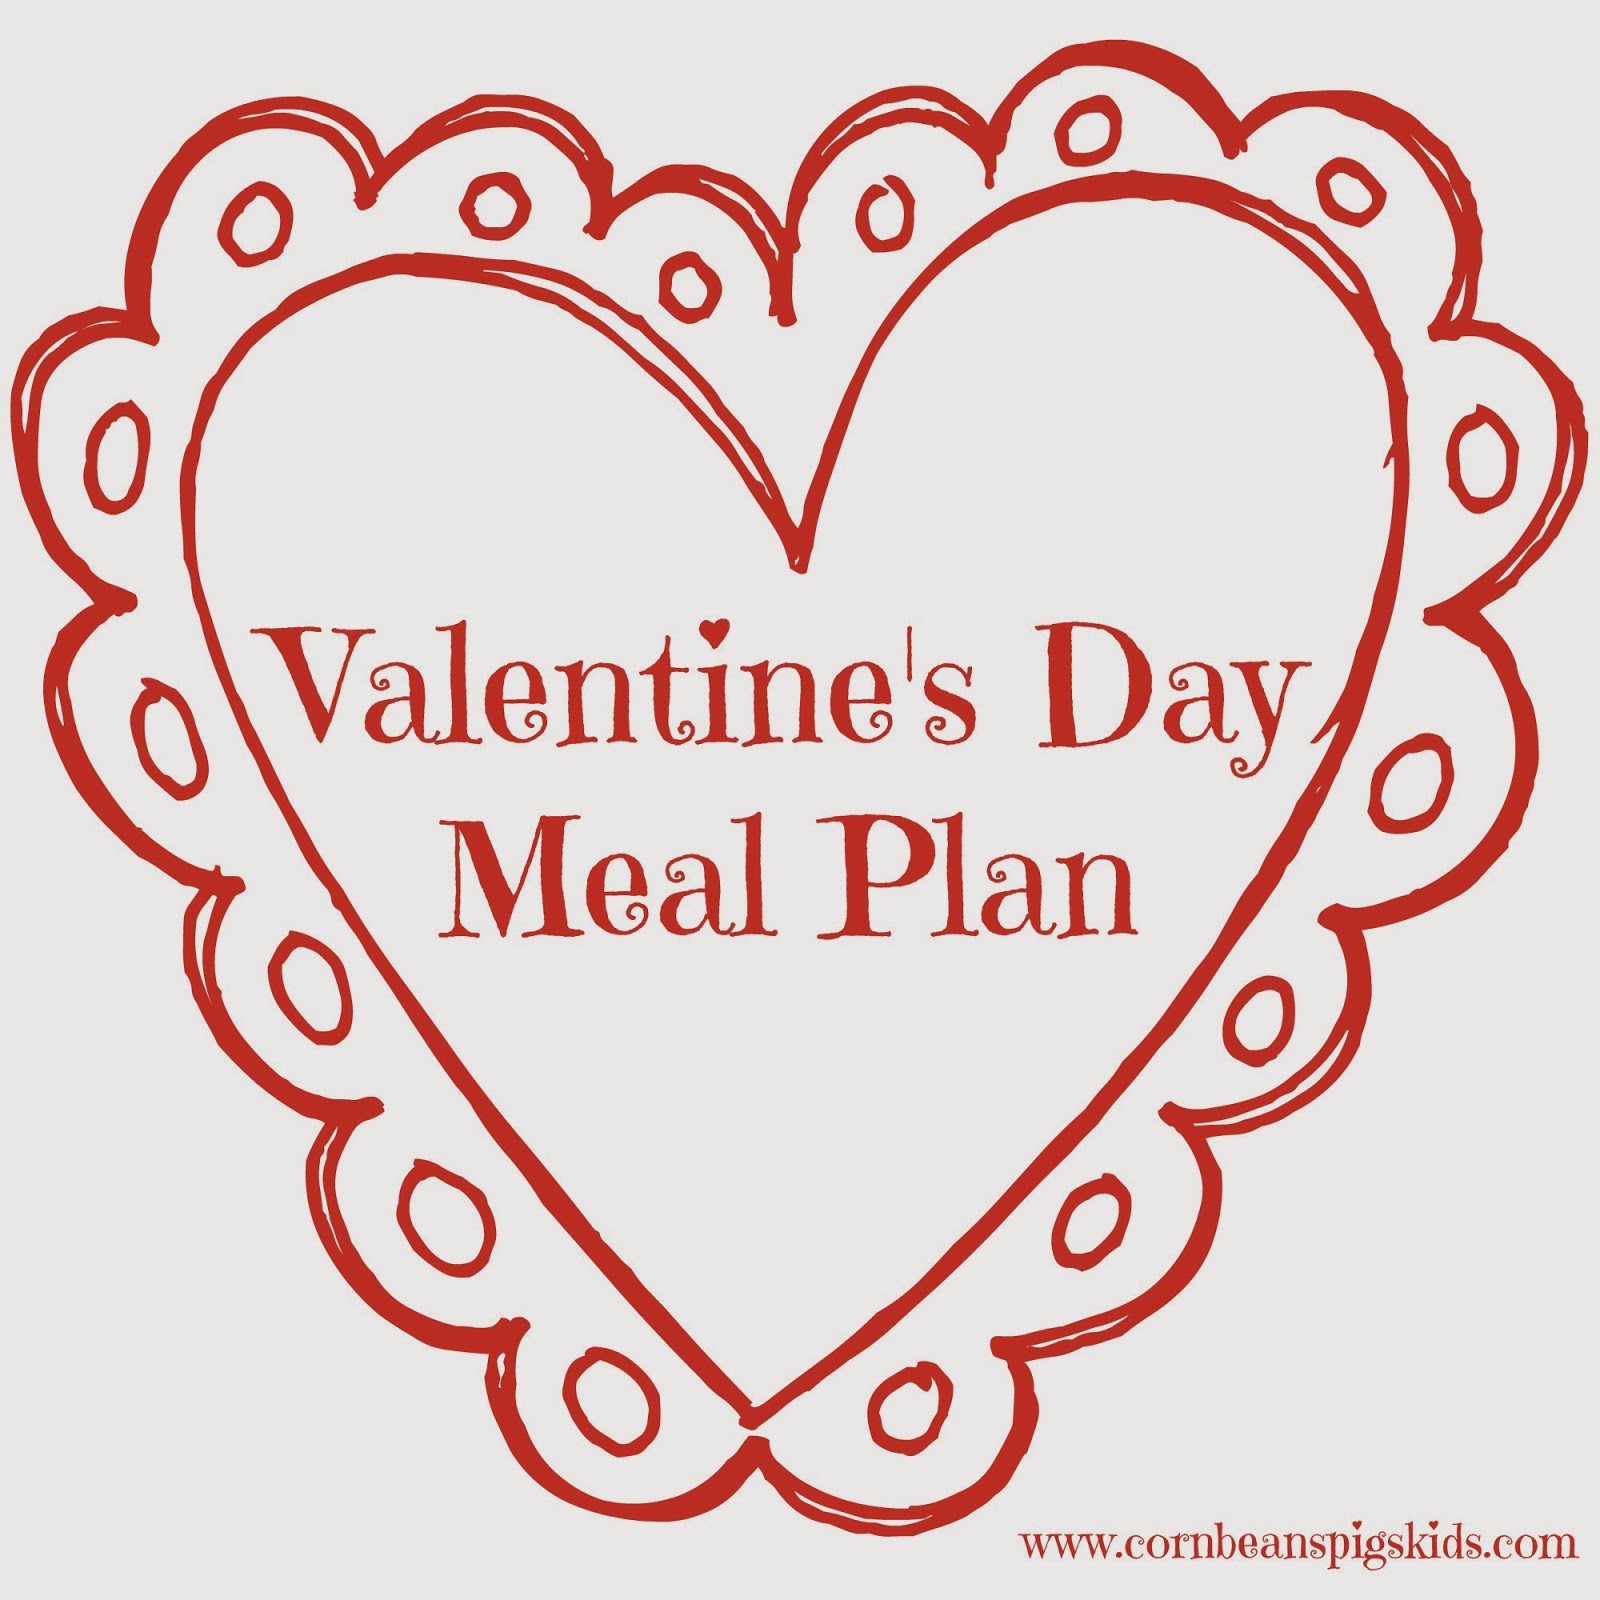 Valentine's Day Menu Plan